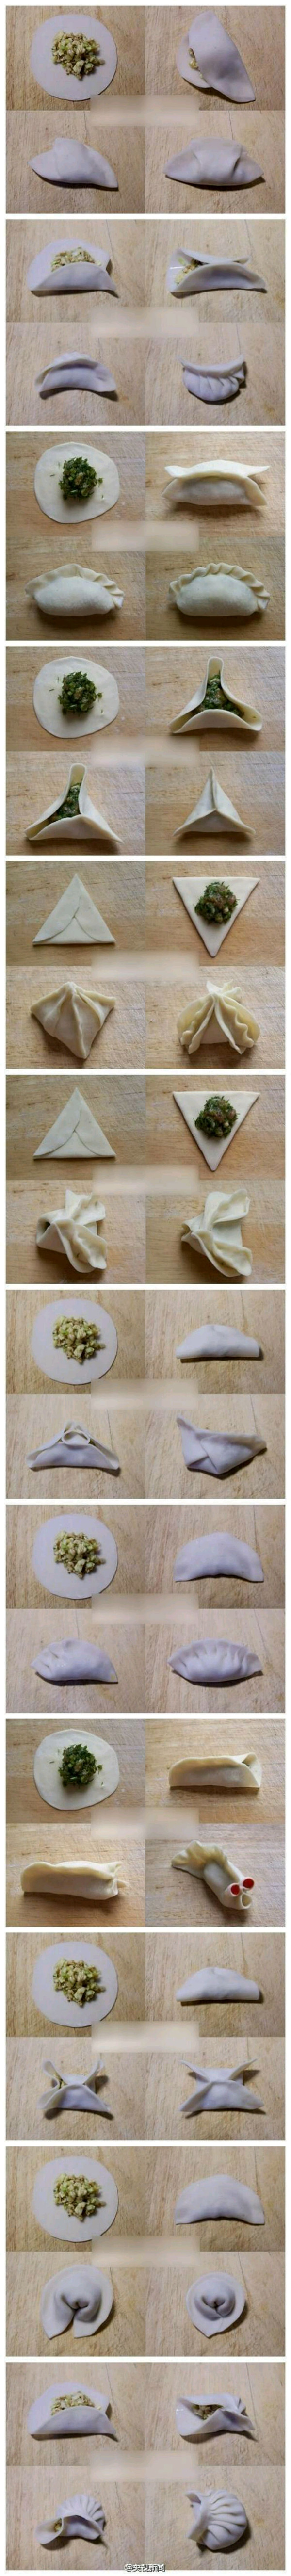 饺子花式包法图片